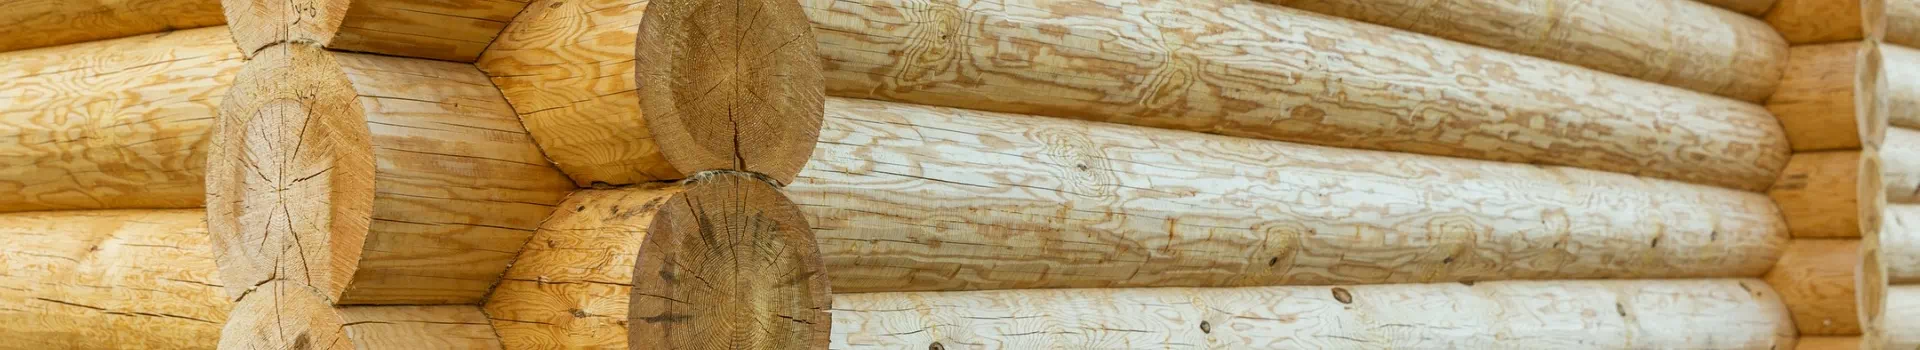 drewniane bale